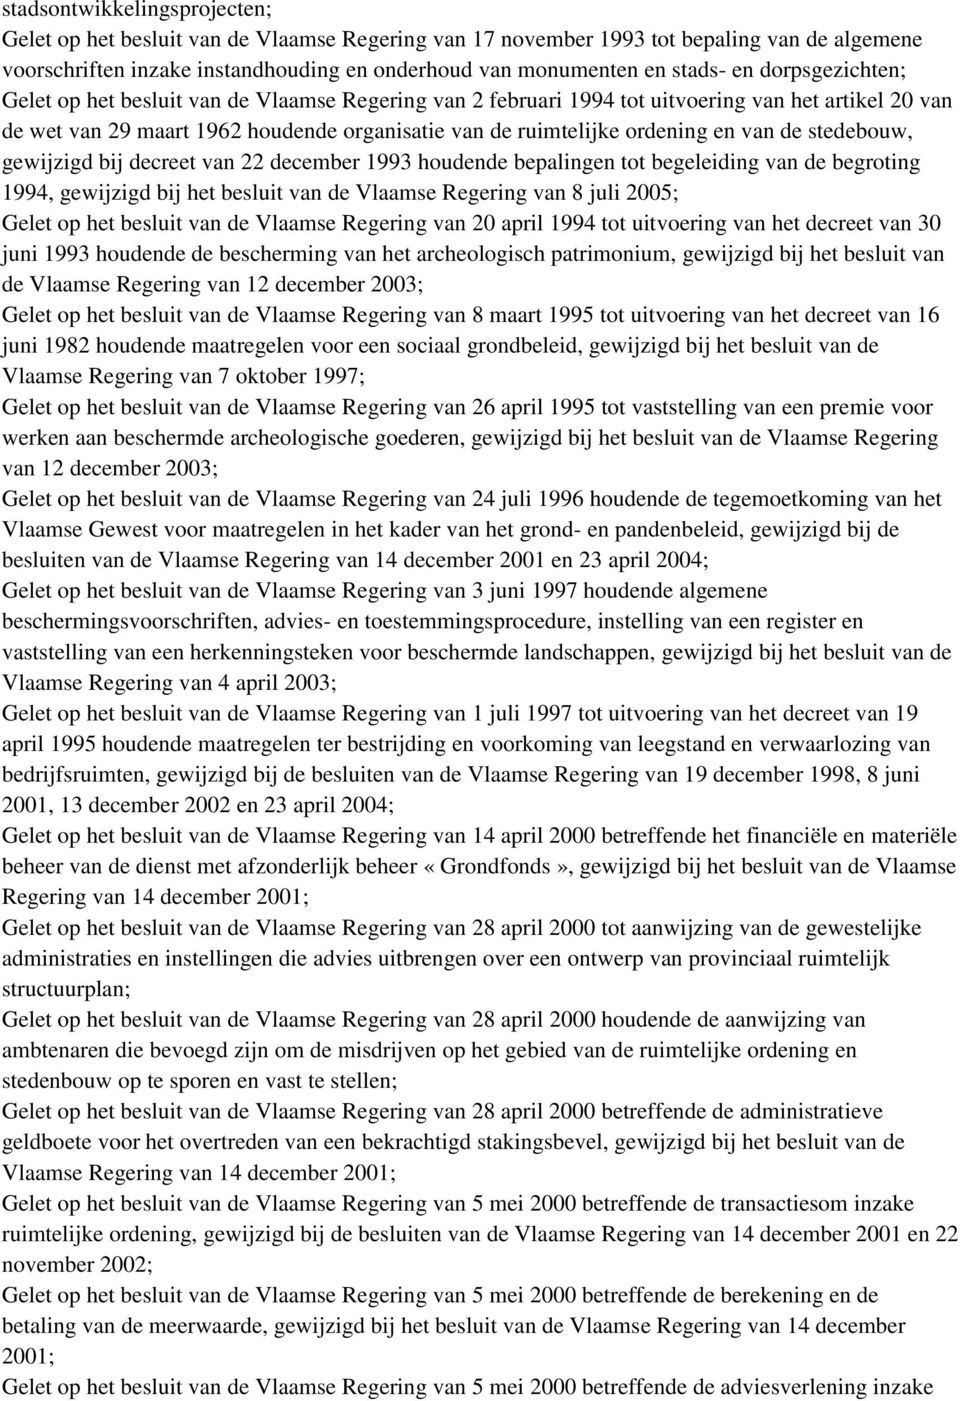 van de stedebouw, gewijzigd bij decreet van 22 december 1993 houdende bepalingen tot begeleiding van de begroting 1994, gewijzigd bij het besluit van de Vlaamse Regering van 8 juli 2005; Gelet op het